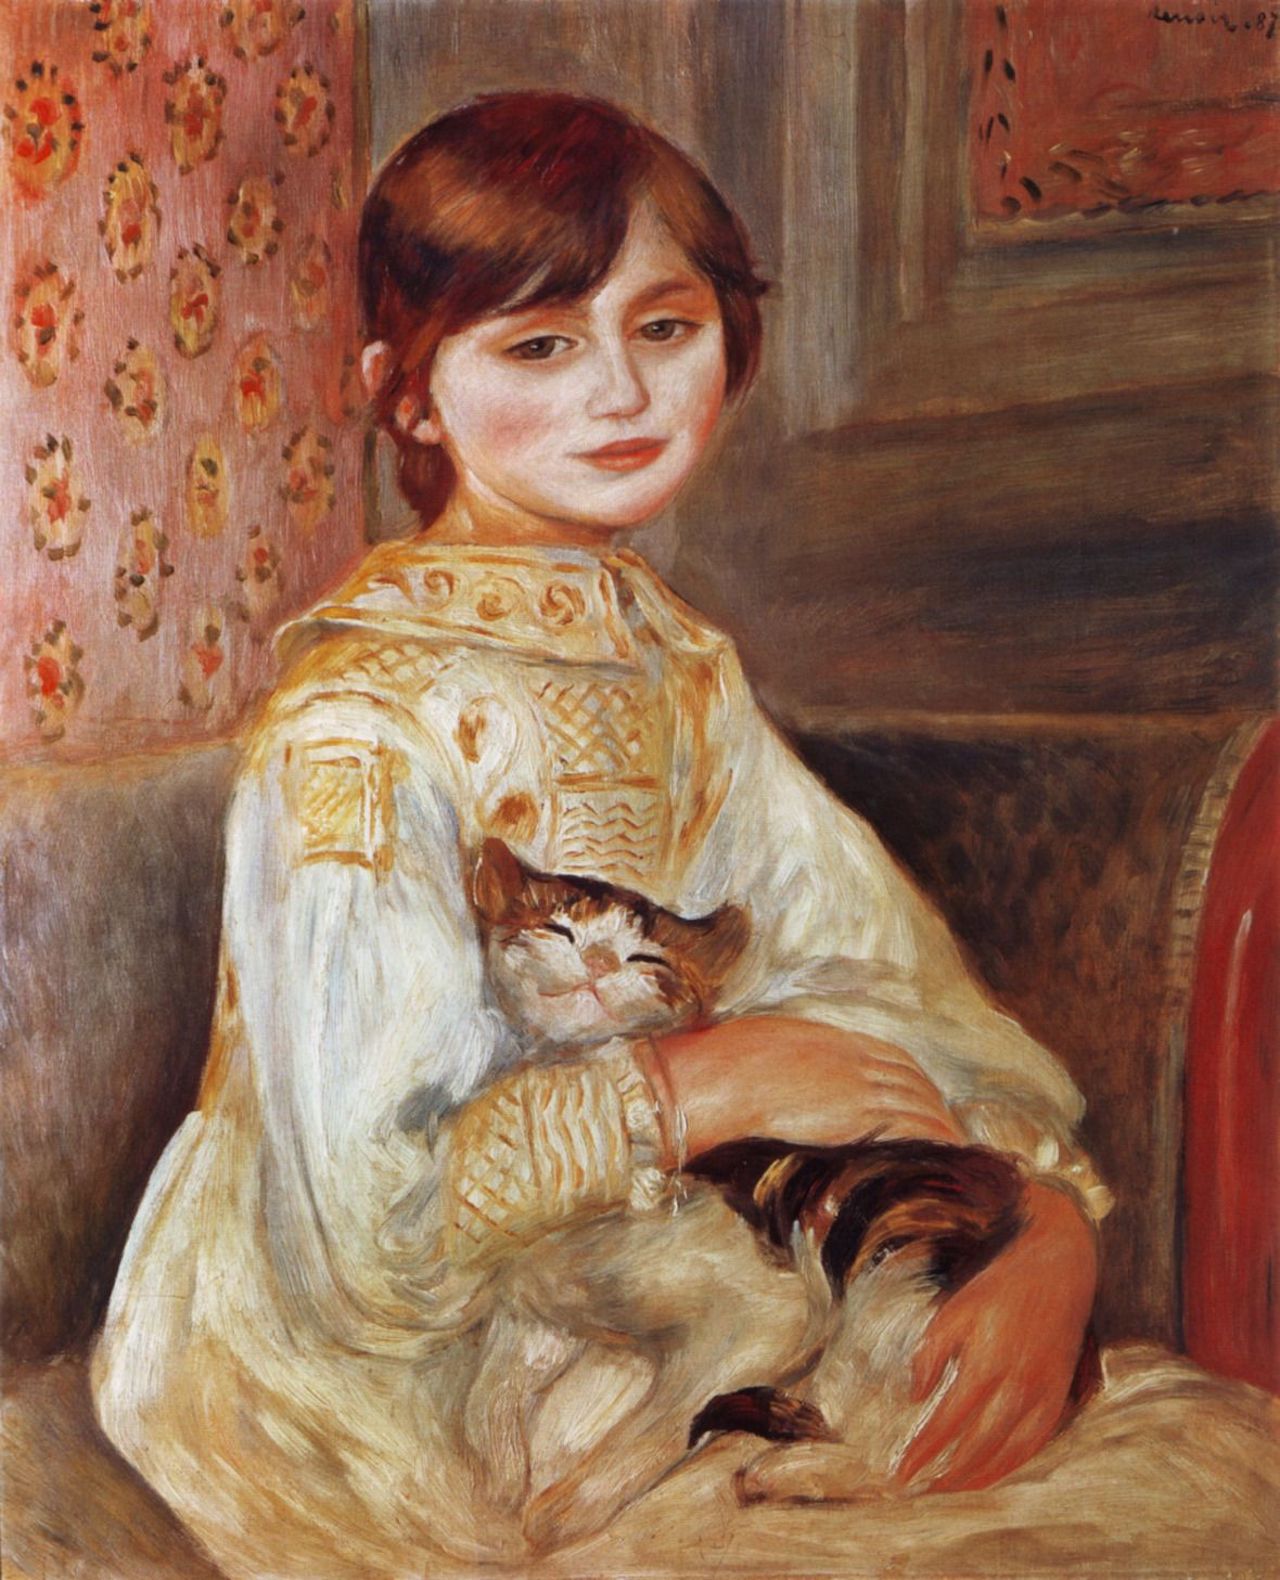 Niño con gato by Pierre-Auguste Renoir - 1887 - 54 x 65 cm Musée d'Orsay